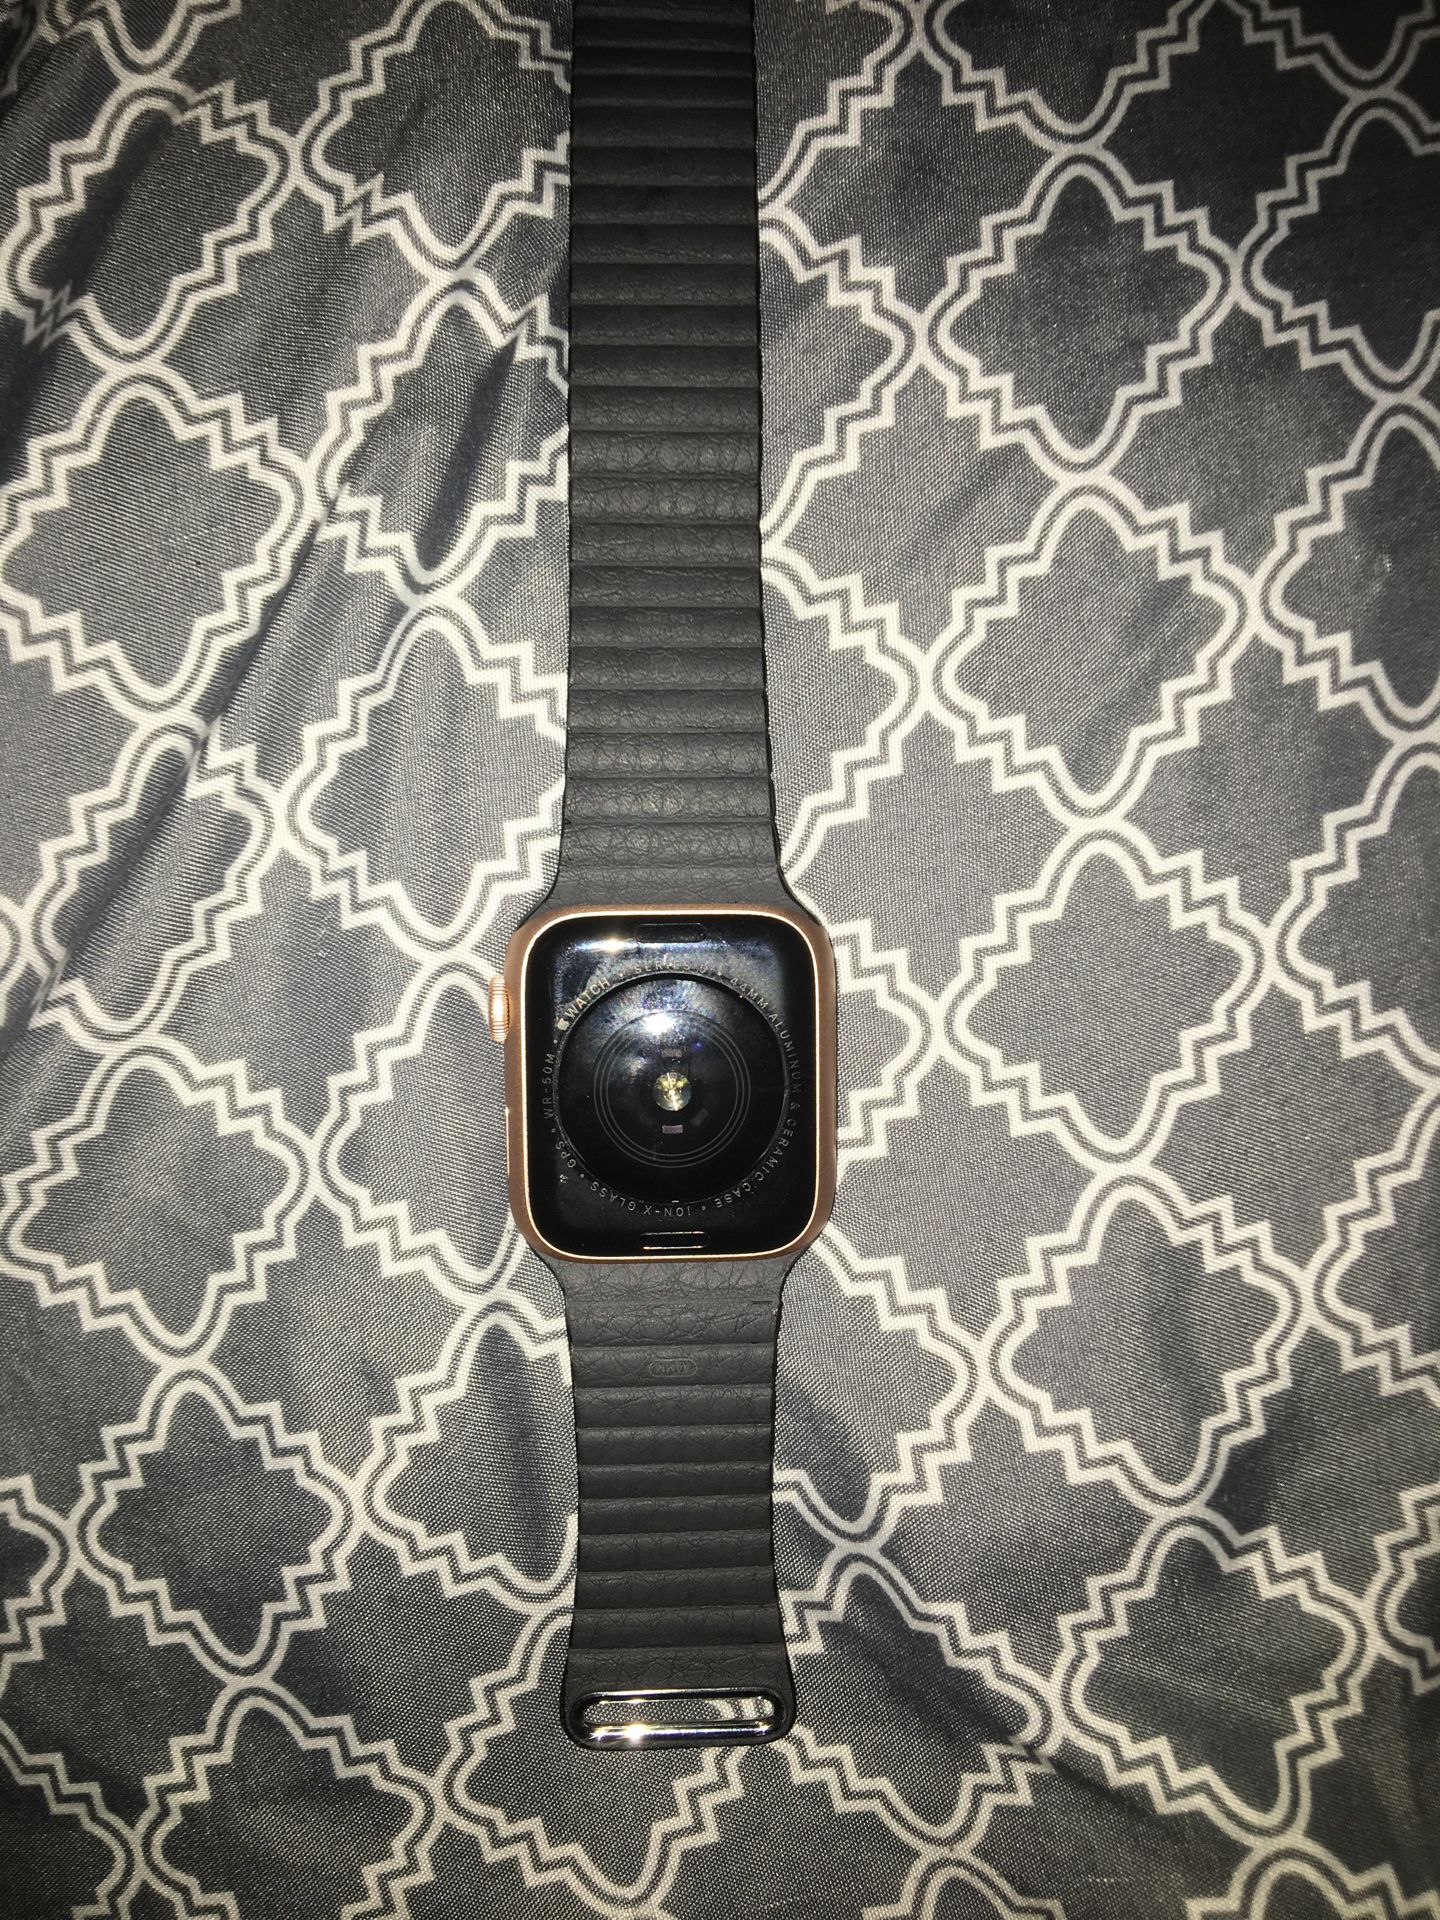 Apple Watch series 5 ( 44 mm gps not cellular ) light scratches